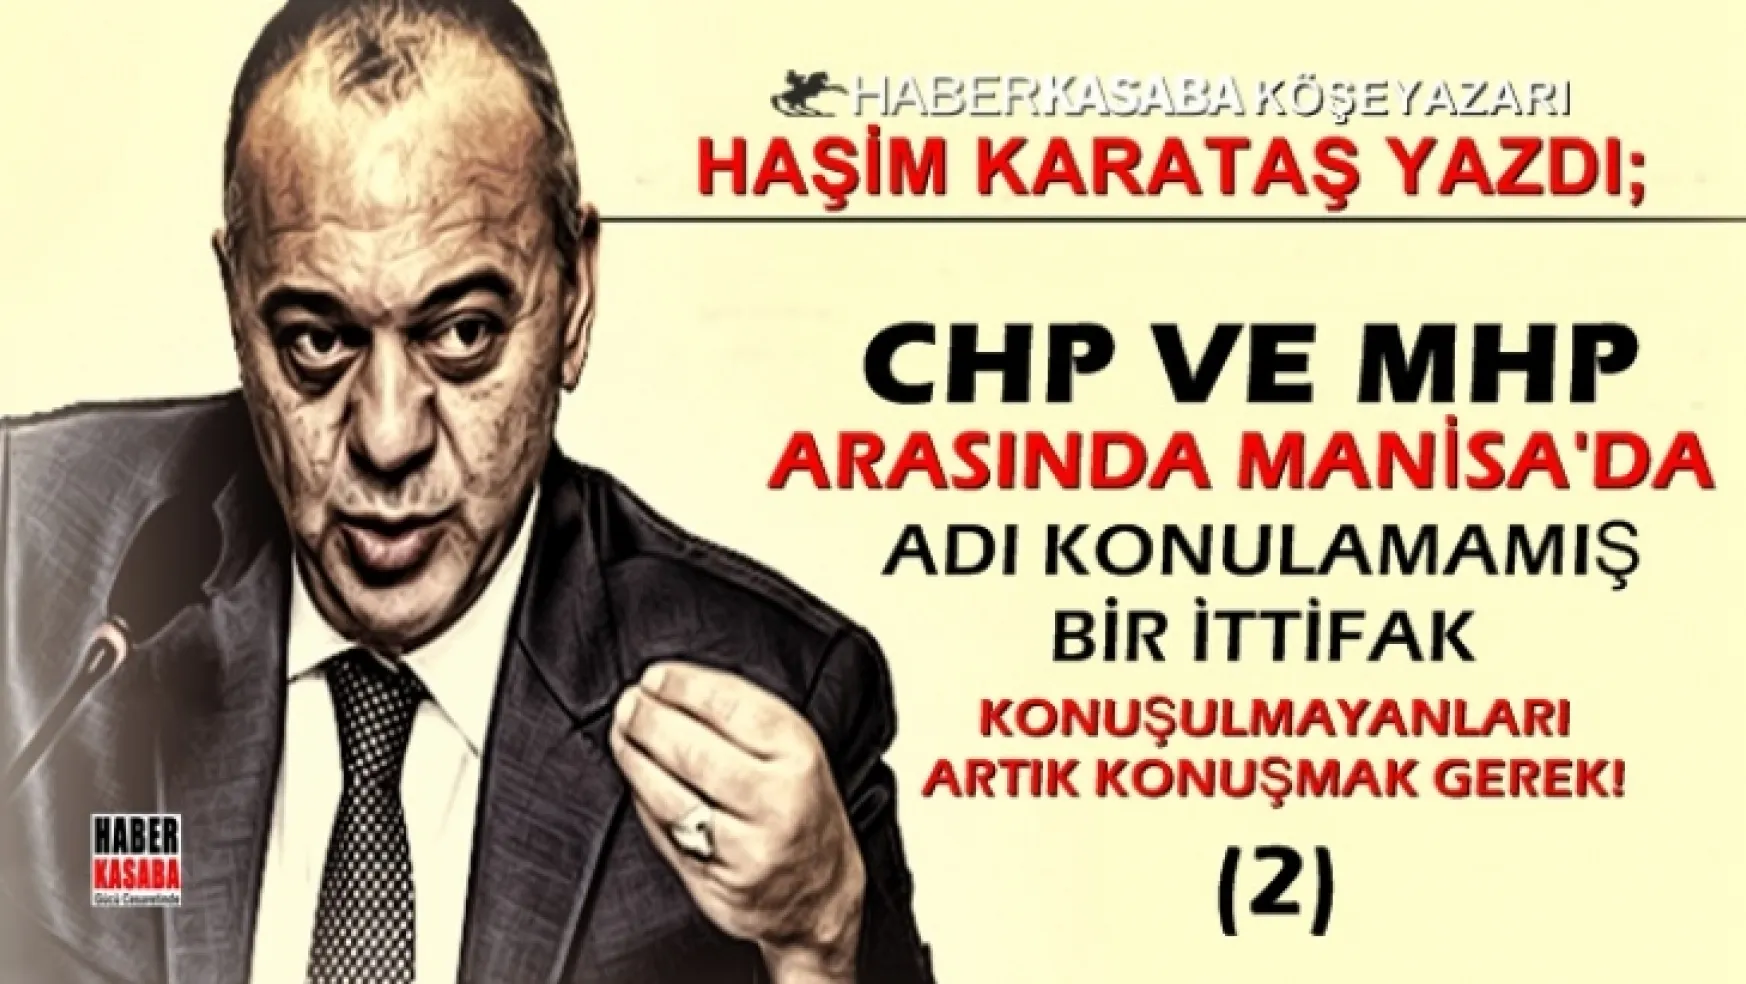 Manisa'da MHP-CHP ve Cengiz Ergün gerçeği!...